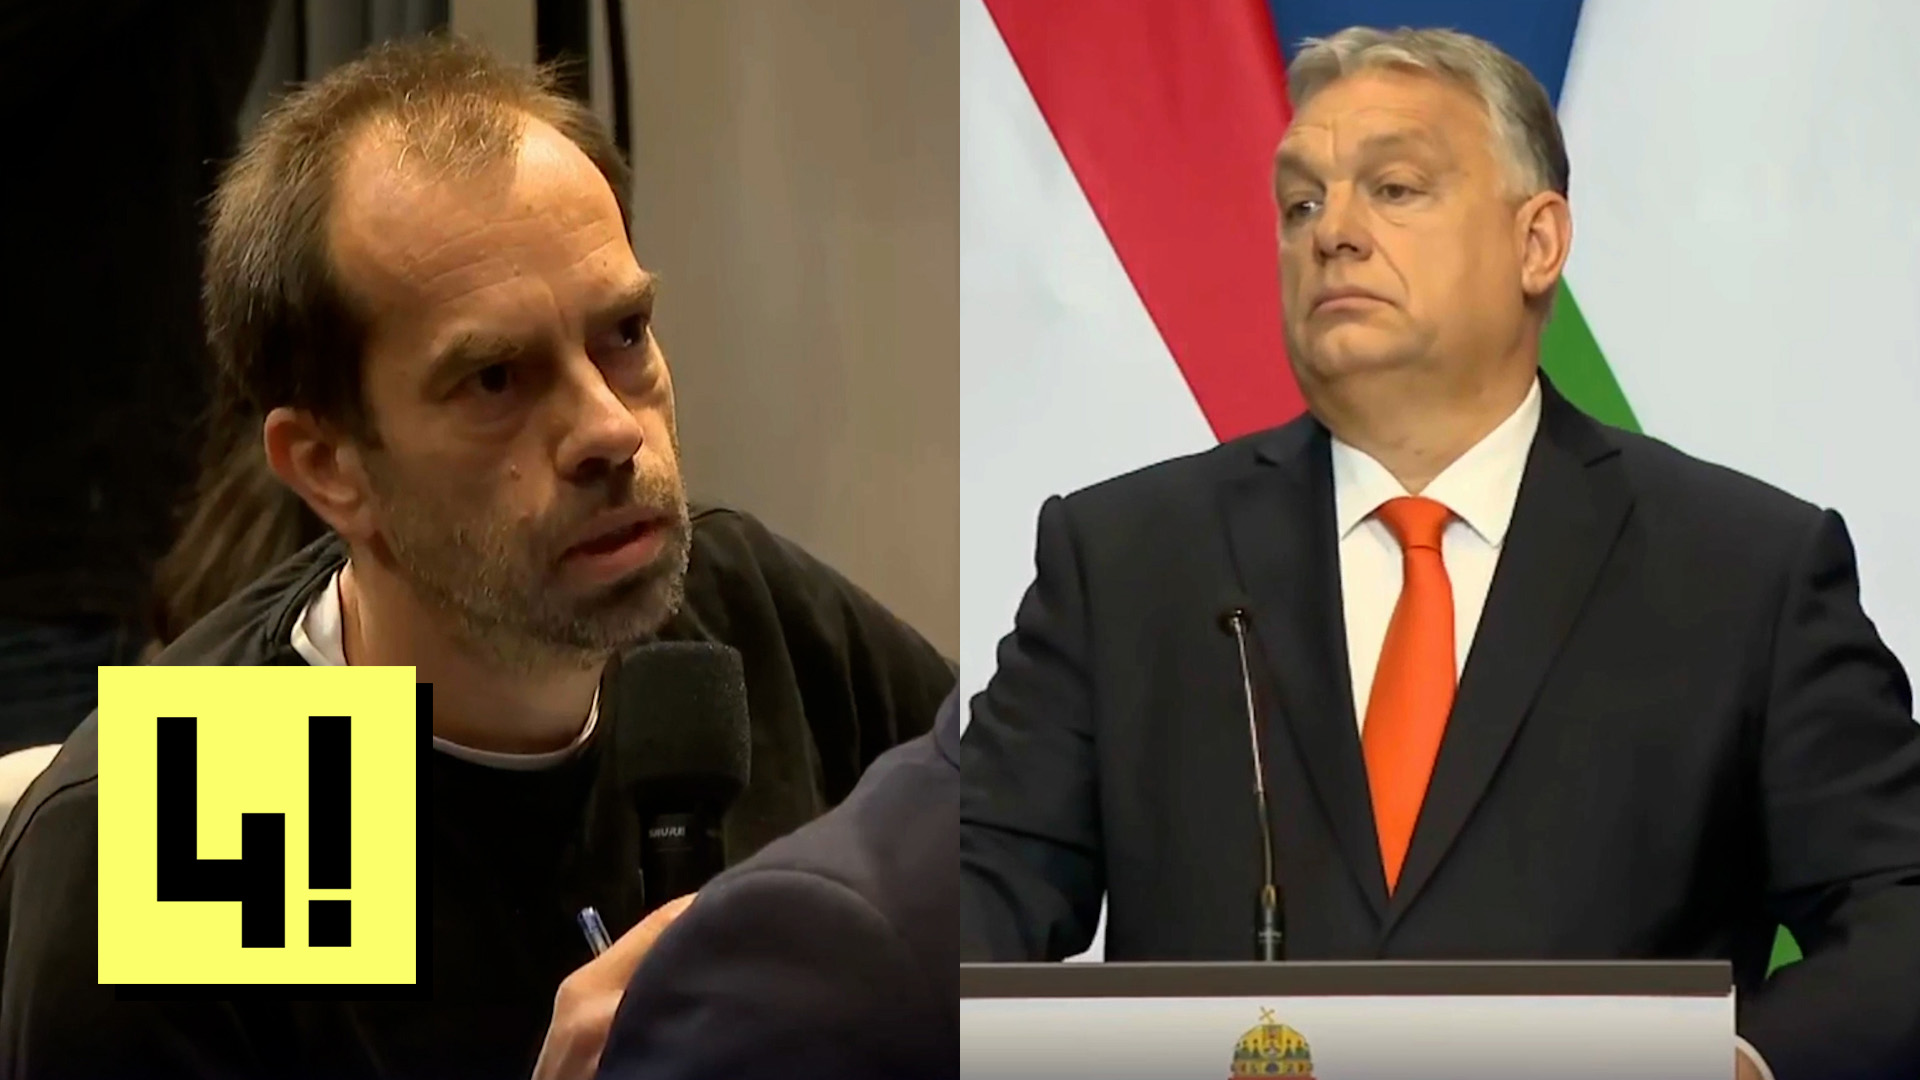 Édesanyjáról, kordonbontásról és Matolcsy kritikájáról kérdeztük Orbánt